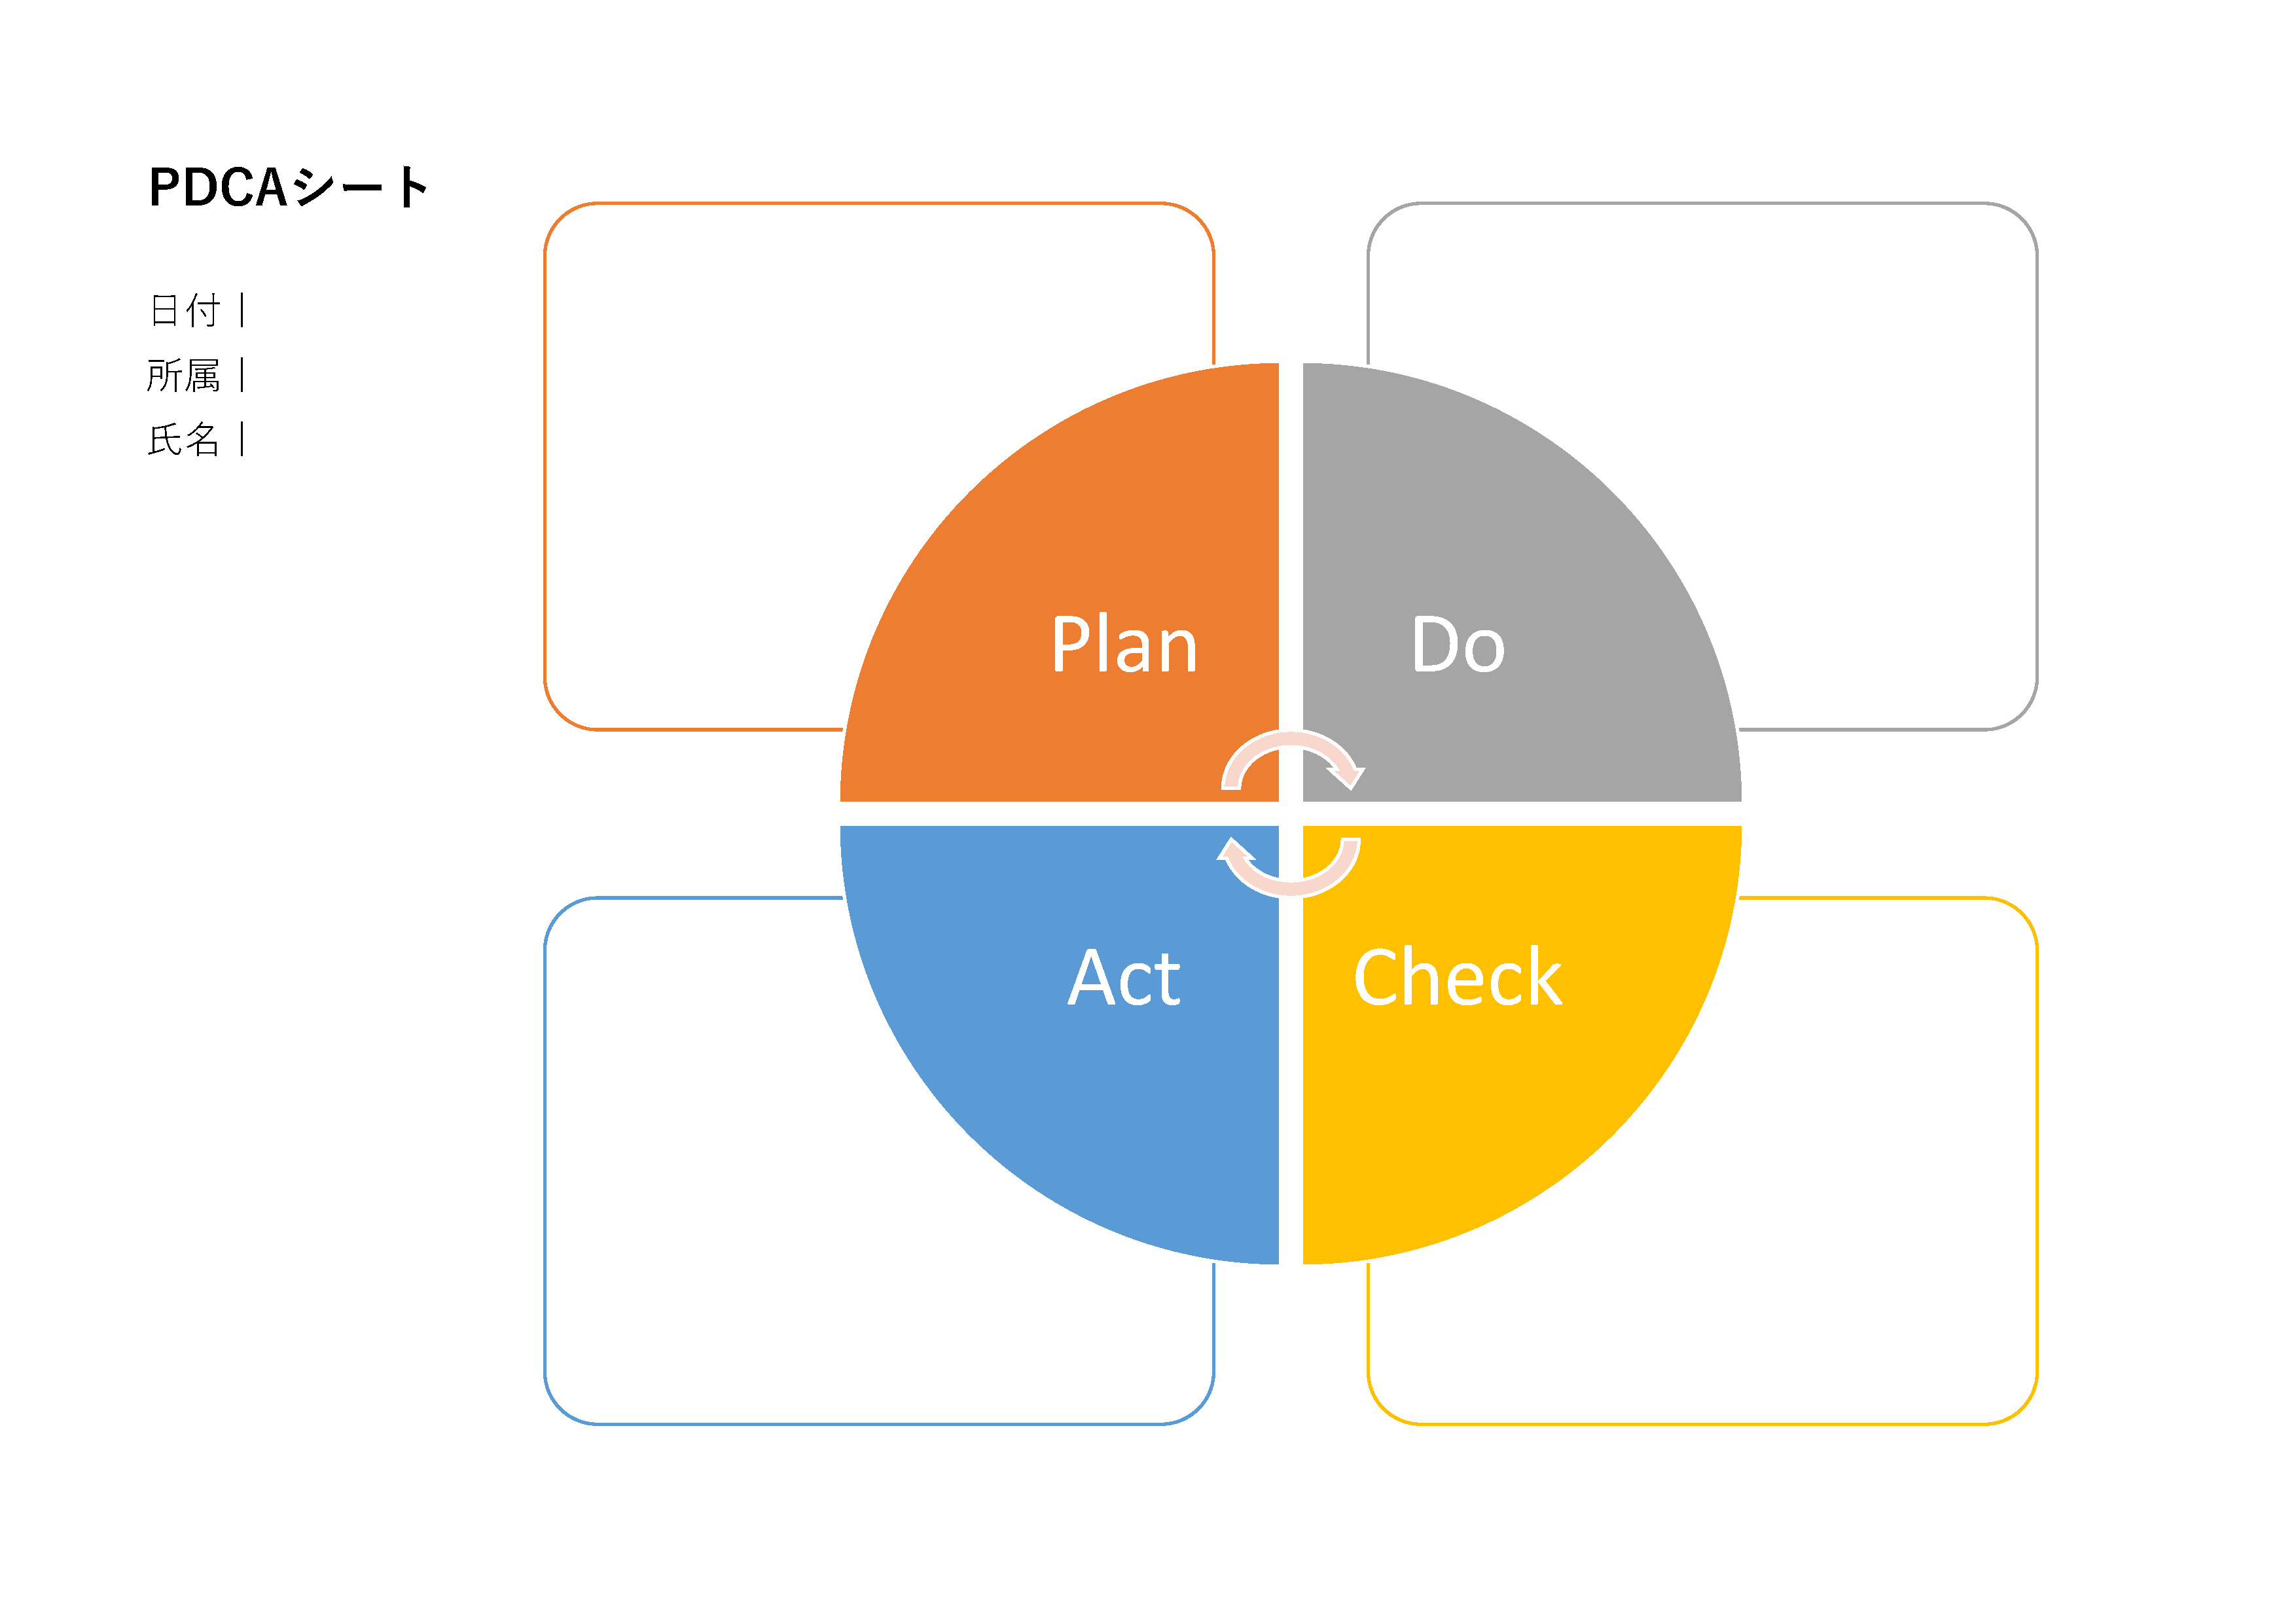 PDCAサイクルの円グラフ表現。4つのセクションがあり、「Plan」「Do」「Check」「Act」のラベルが付けられている。